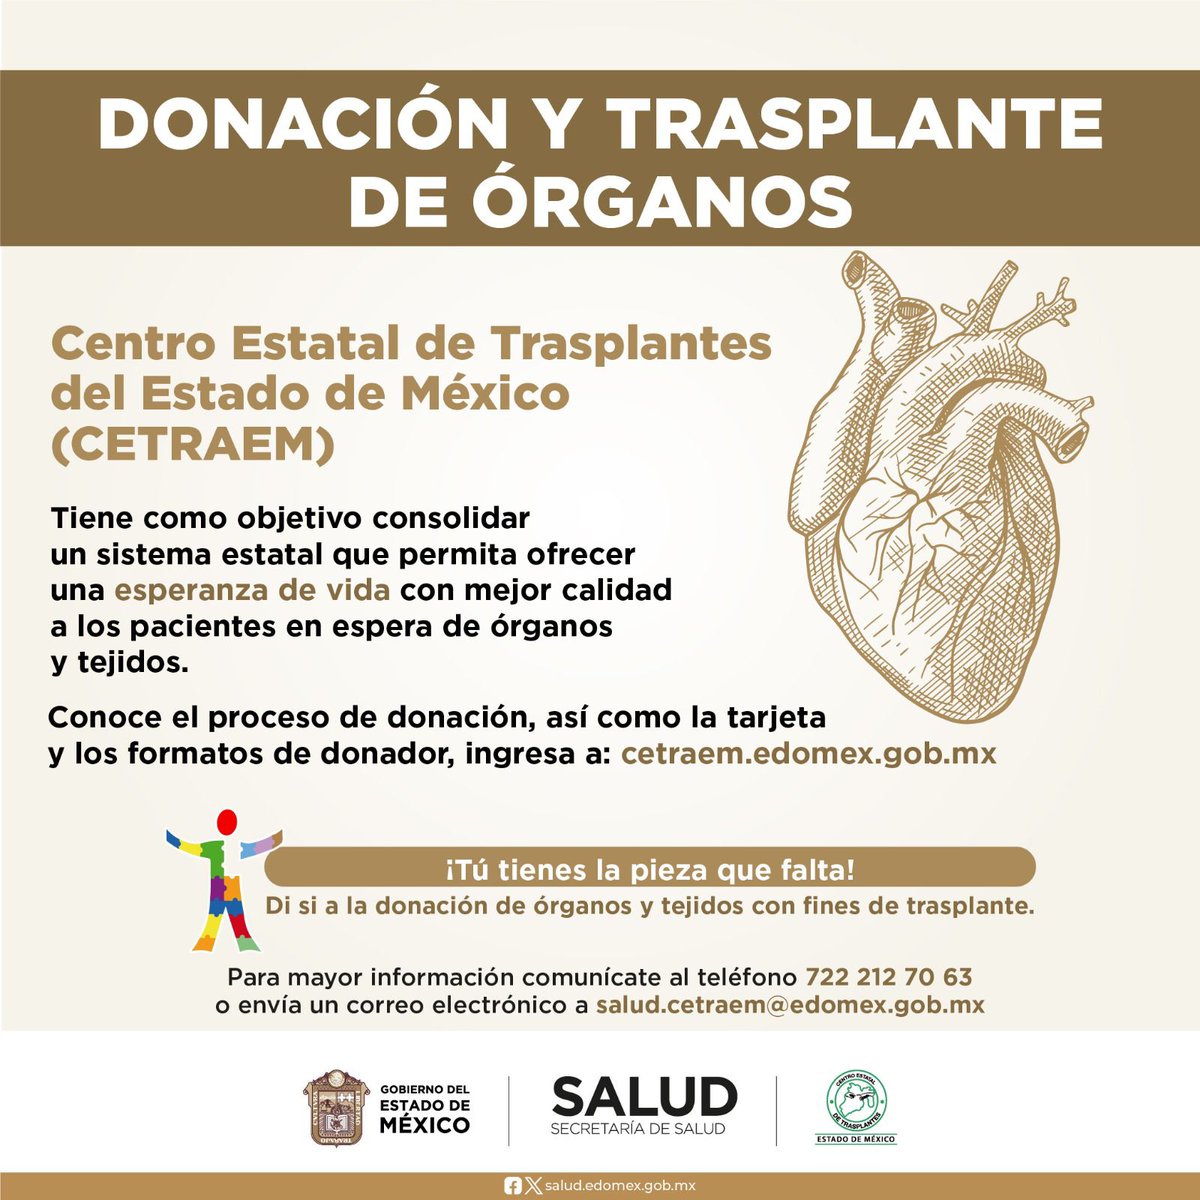 📌Donación y Trasplante de Órganos, ¡Tú puedes ser un donador altruista!.
💻Ingresa al siguiente link cetraem.edomex.gob.mx
y conoce los requisitos para convertirte en una donadora o donador altruista. 🫶
#Cetraem
#DonarÓrganosEsDonarVida

@SaludEdomex